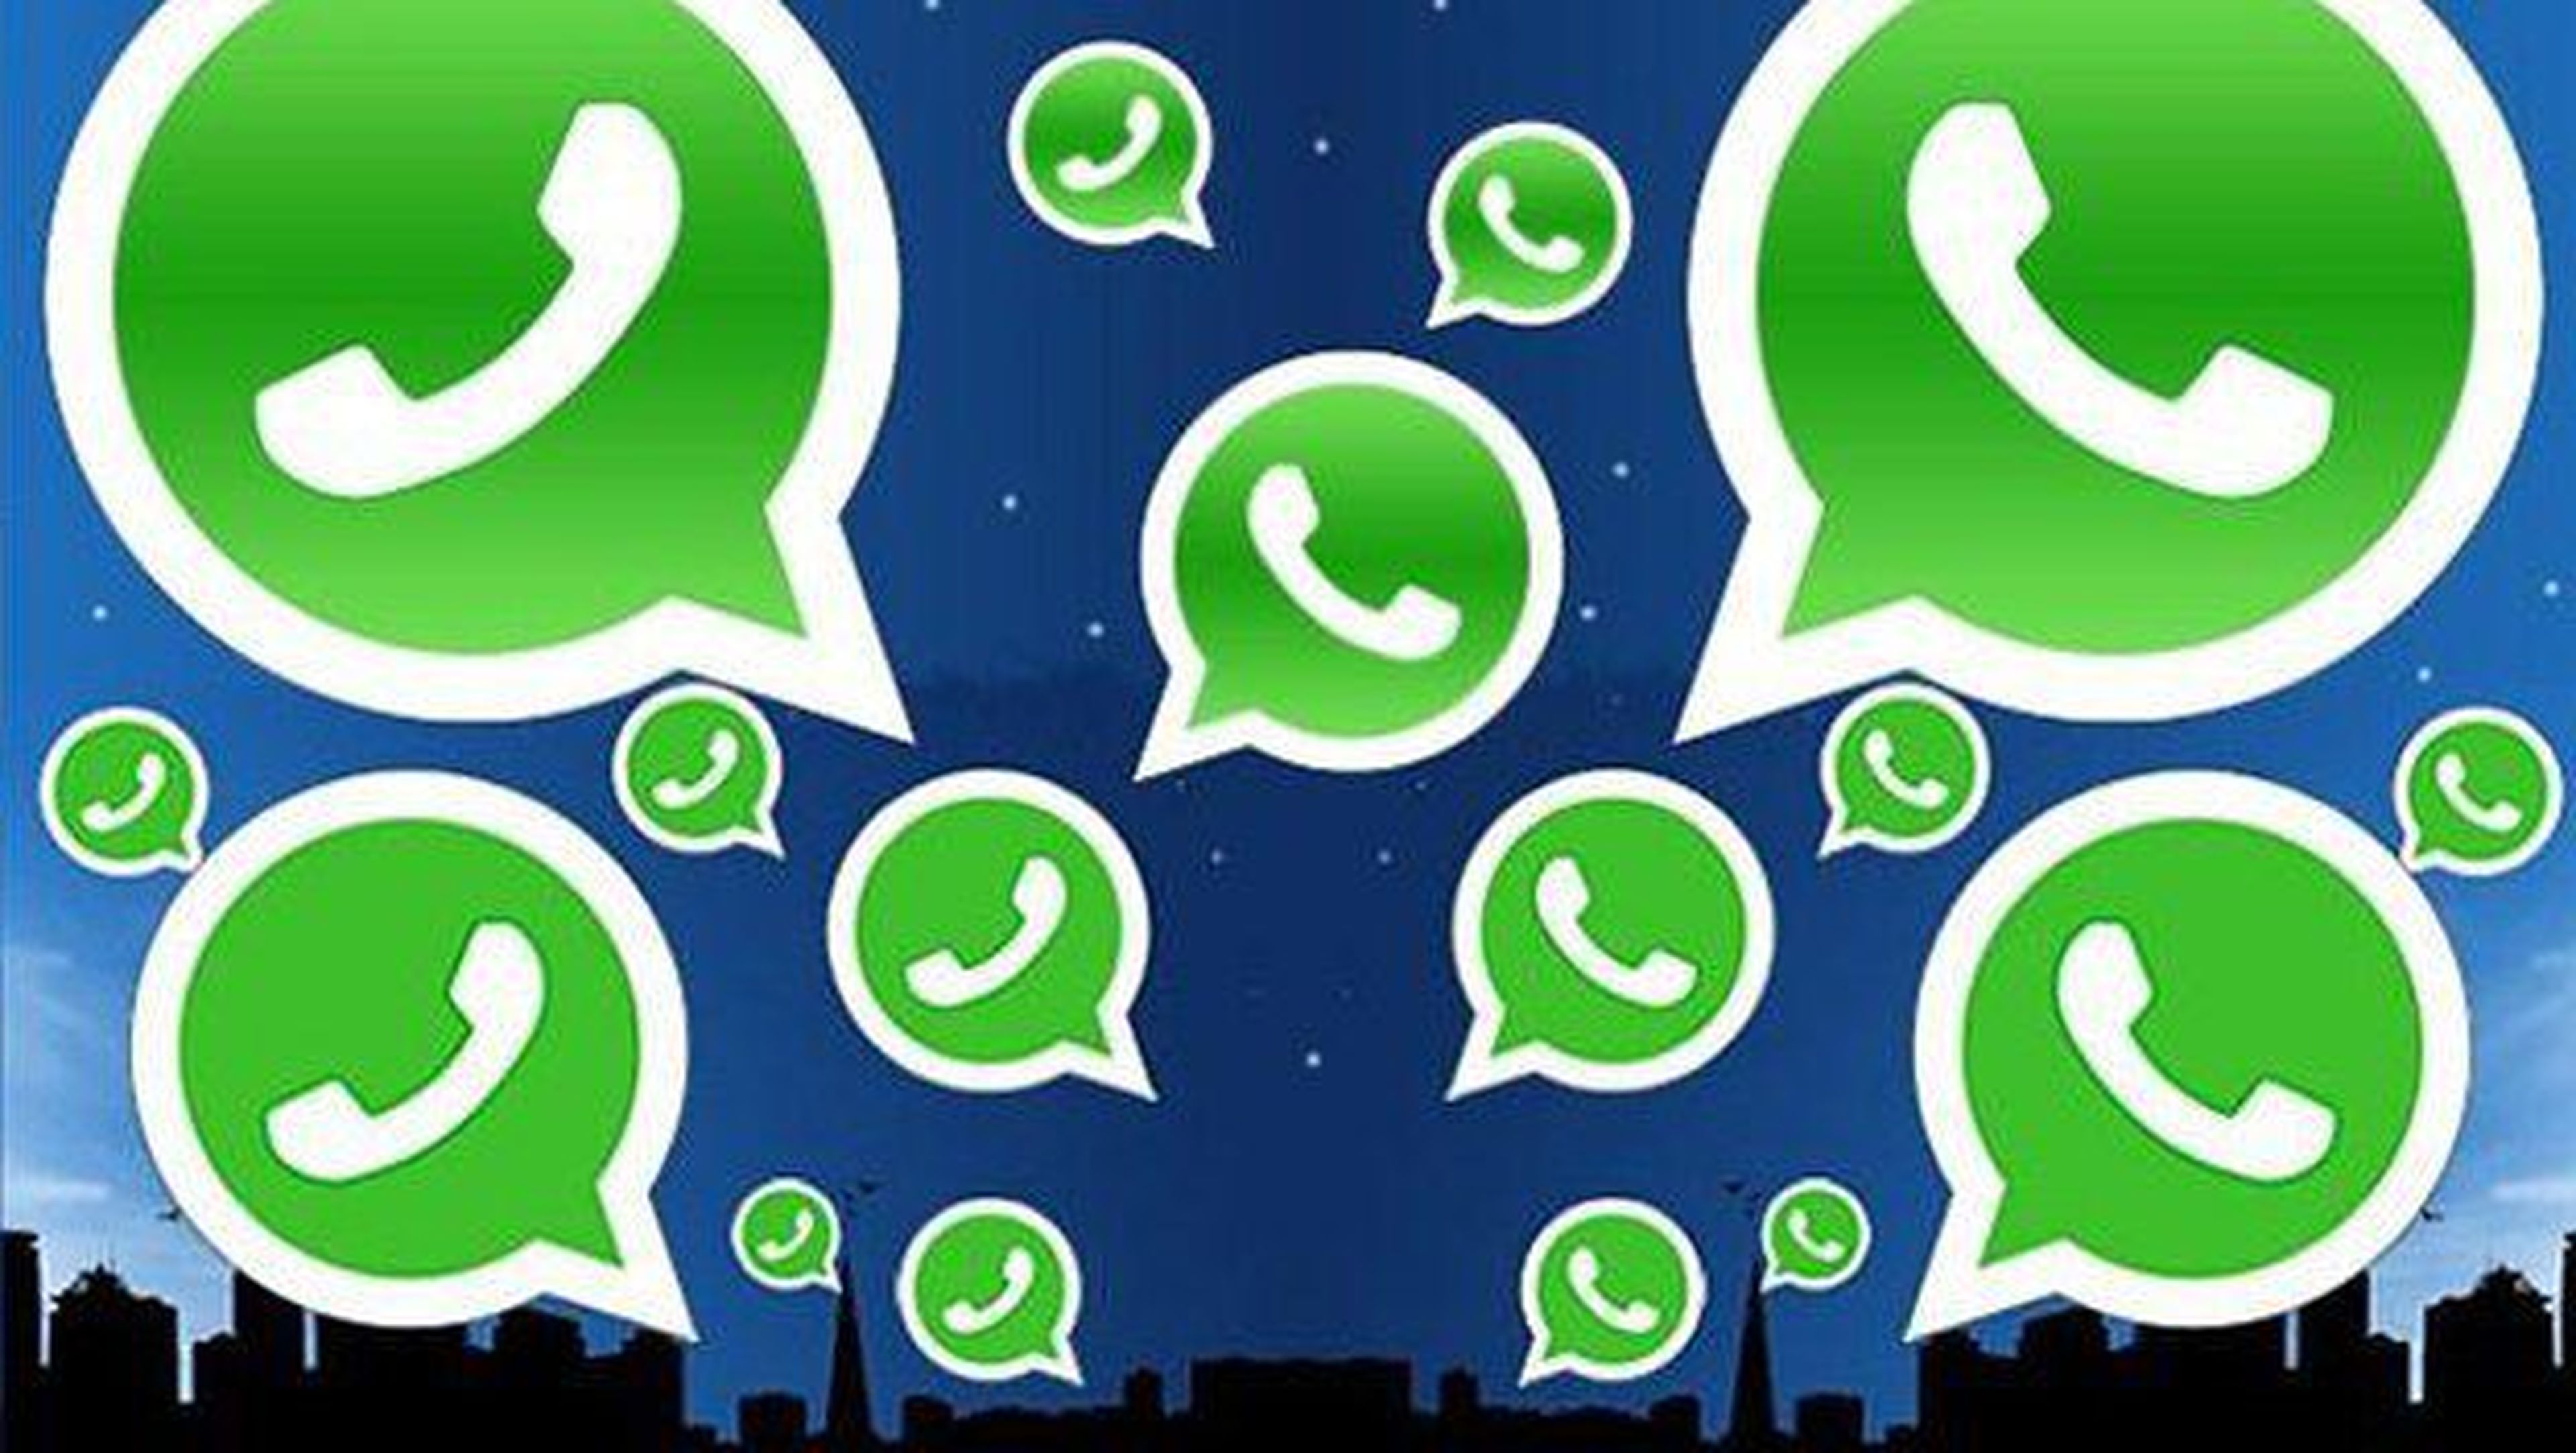 Las llamadas gratis de WhatsApp reciben nuevas funciones